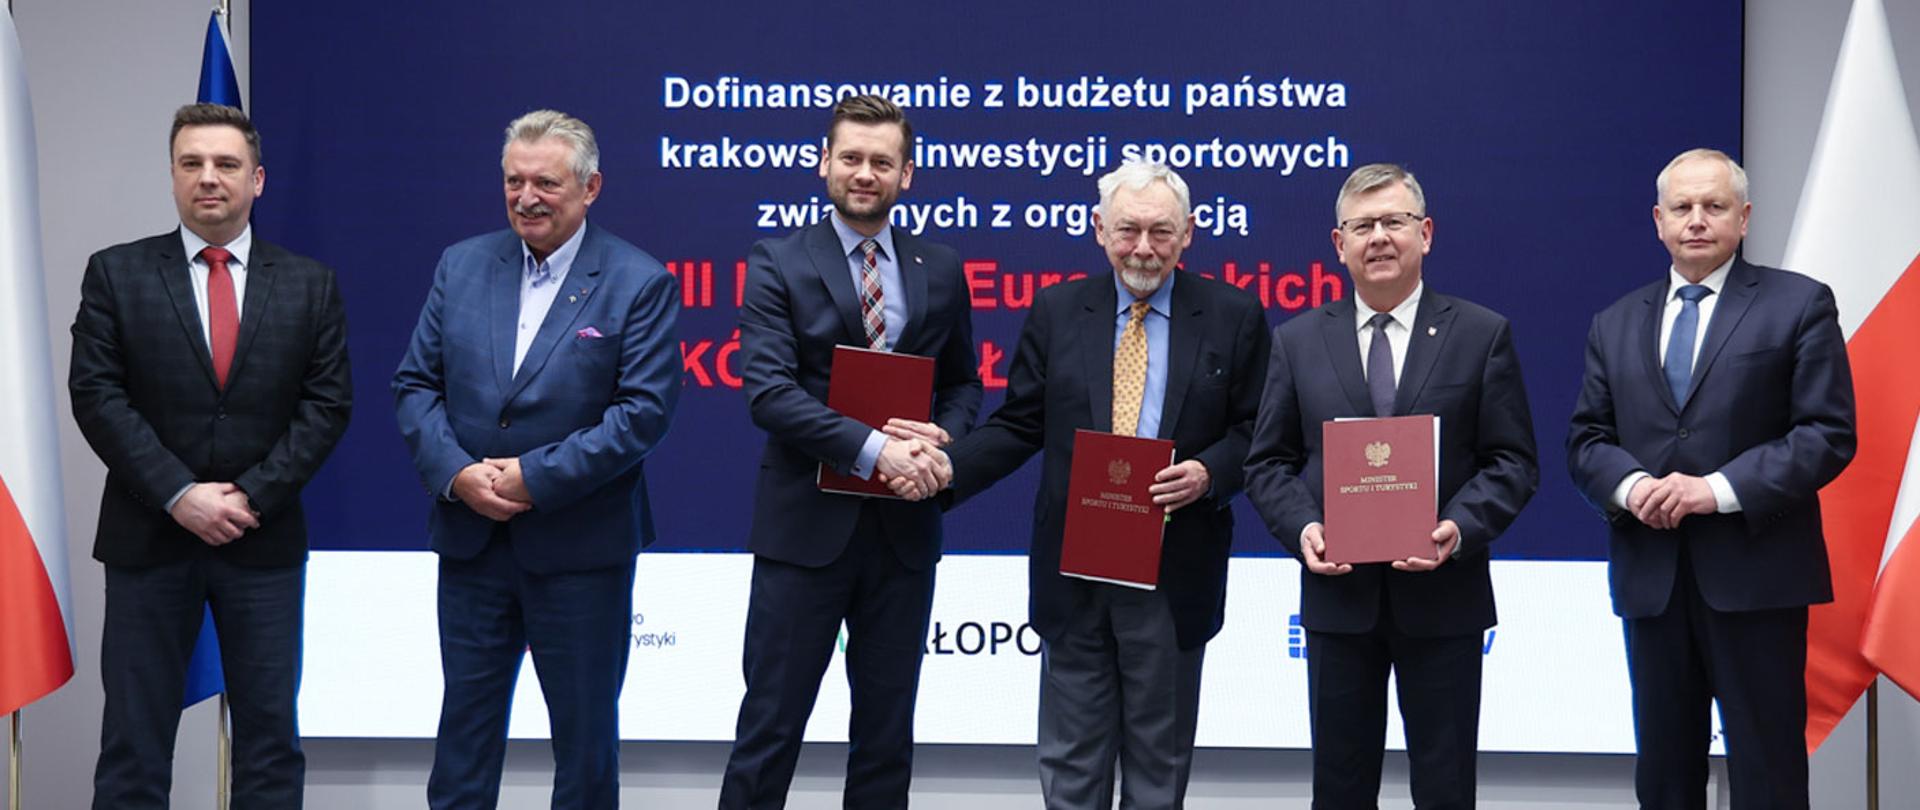 Podpisanie umowy na dofinansowanie z budżetu państwa krakowskich inwestycji sportowych związanych z organizacją III Igrzysk Europejskich